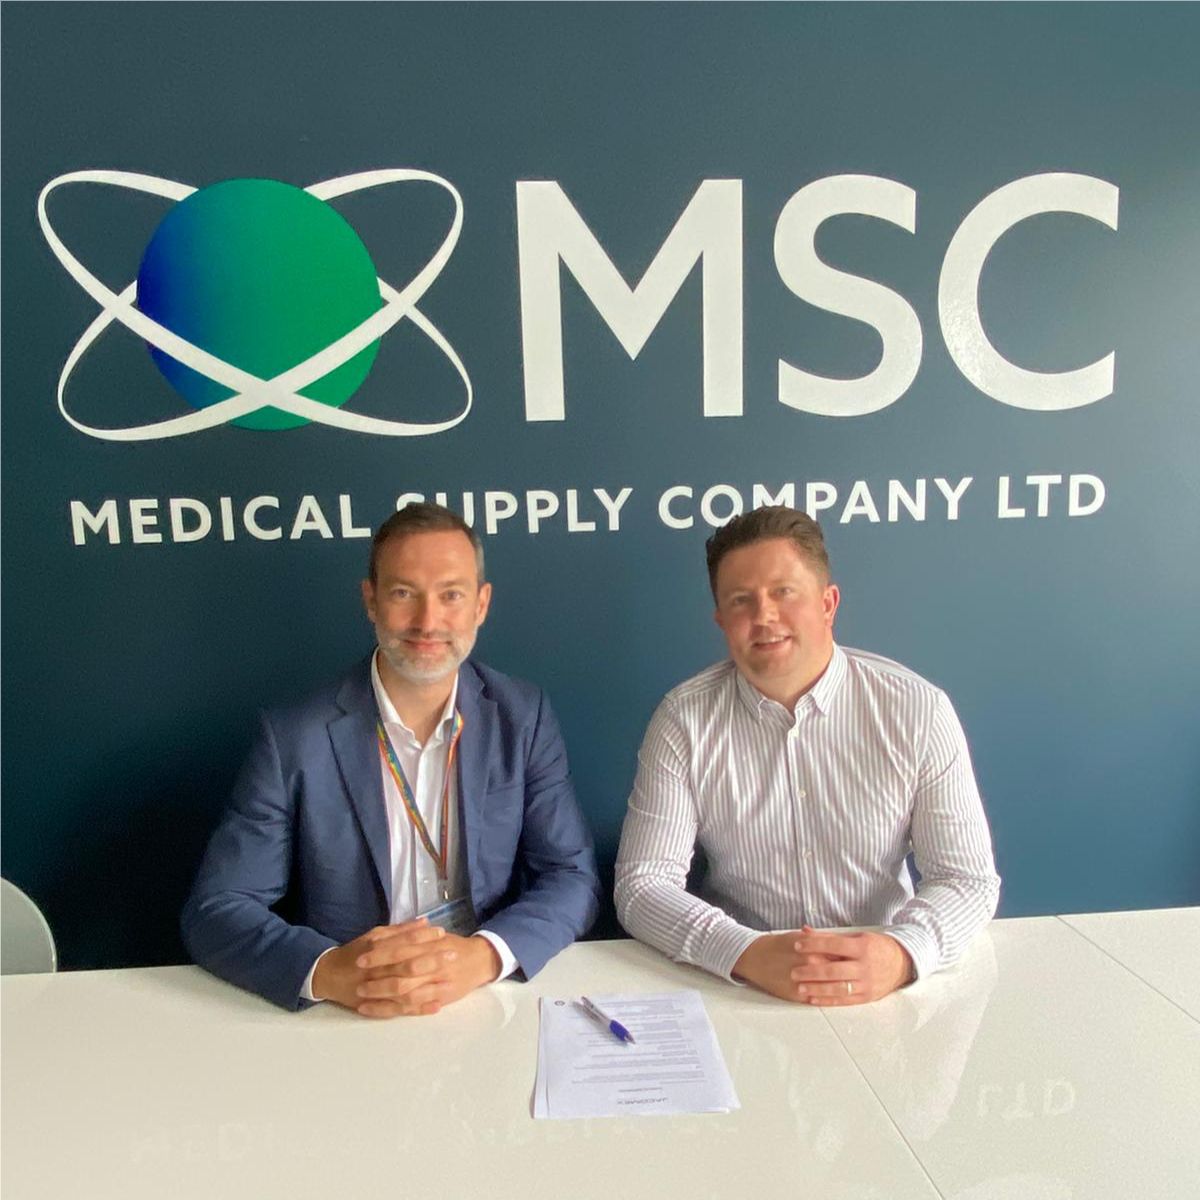 Partenariat avec la société Medical Supply Company (MSC) pour représenter Jacomex en Irlande